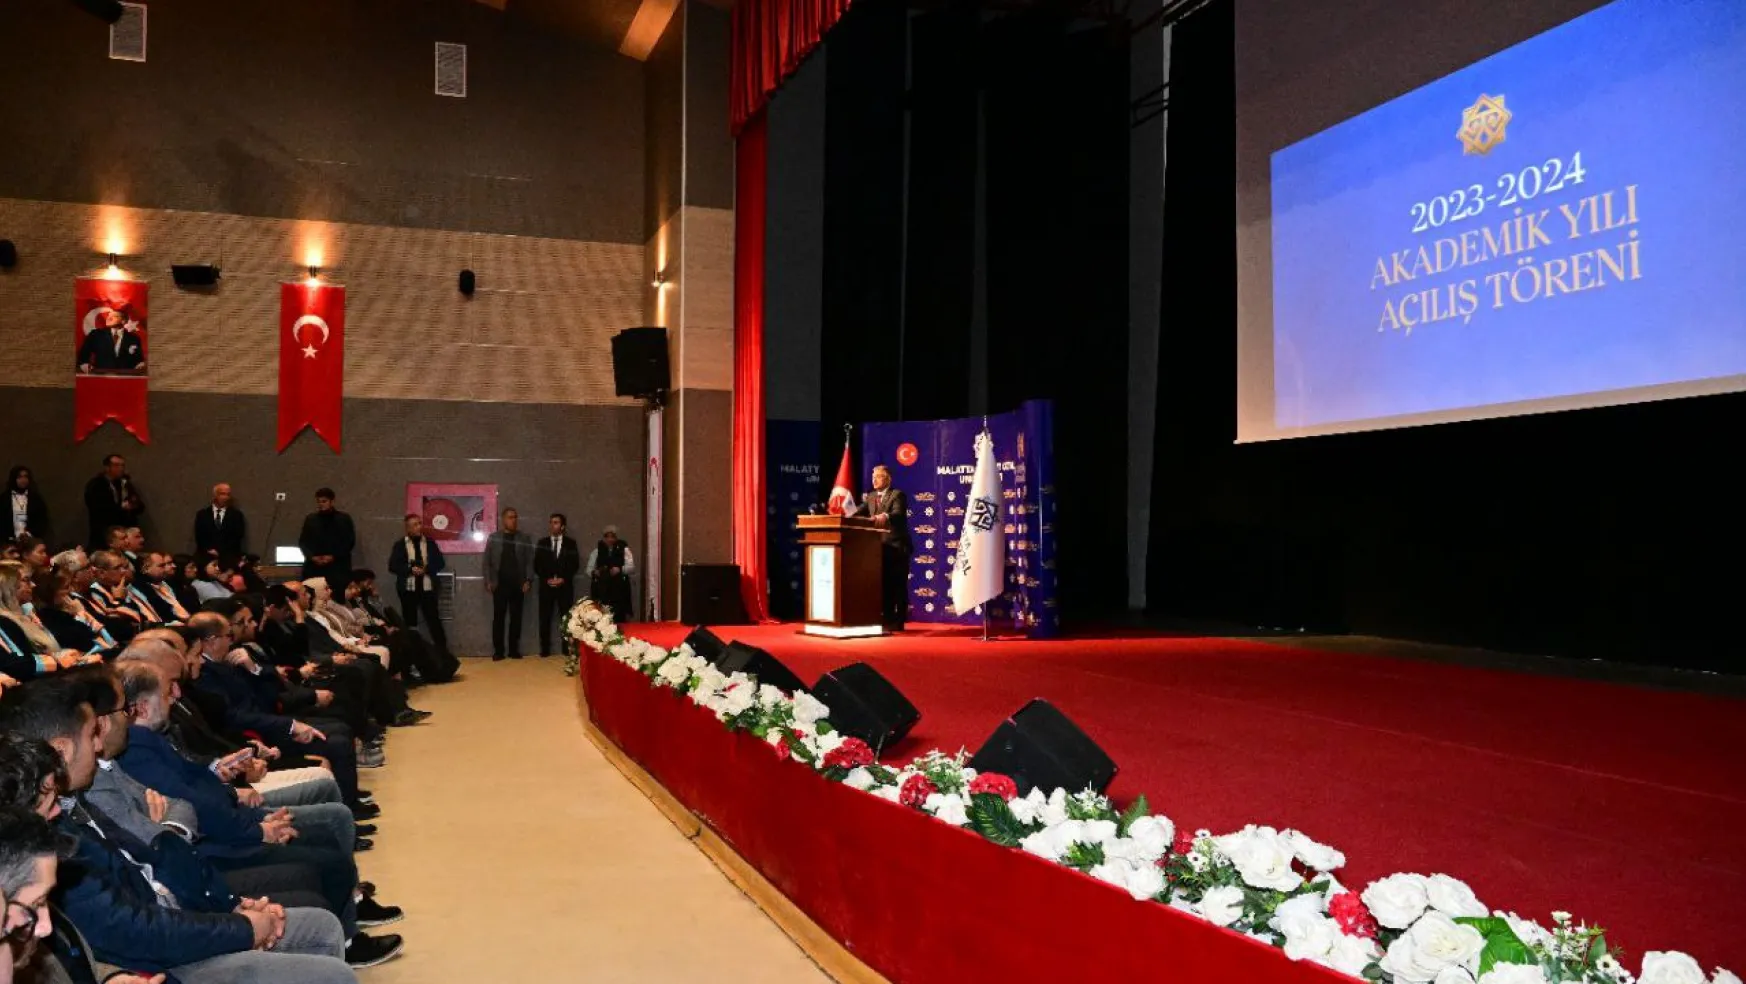 Malatya Turgut Özal Üniversitesi 2023-2024 Akademik Yılı Açılış Töreni Gerçekleştirildi